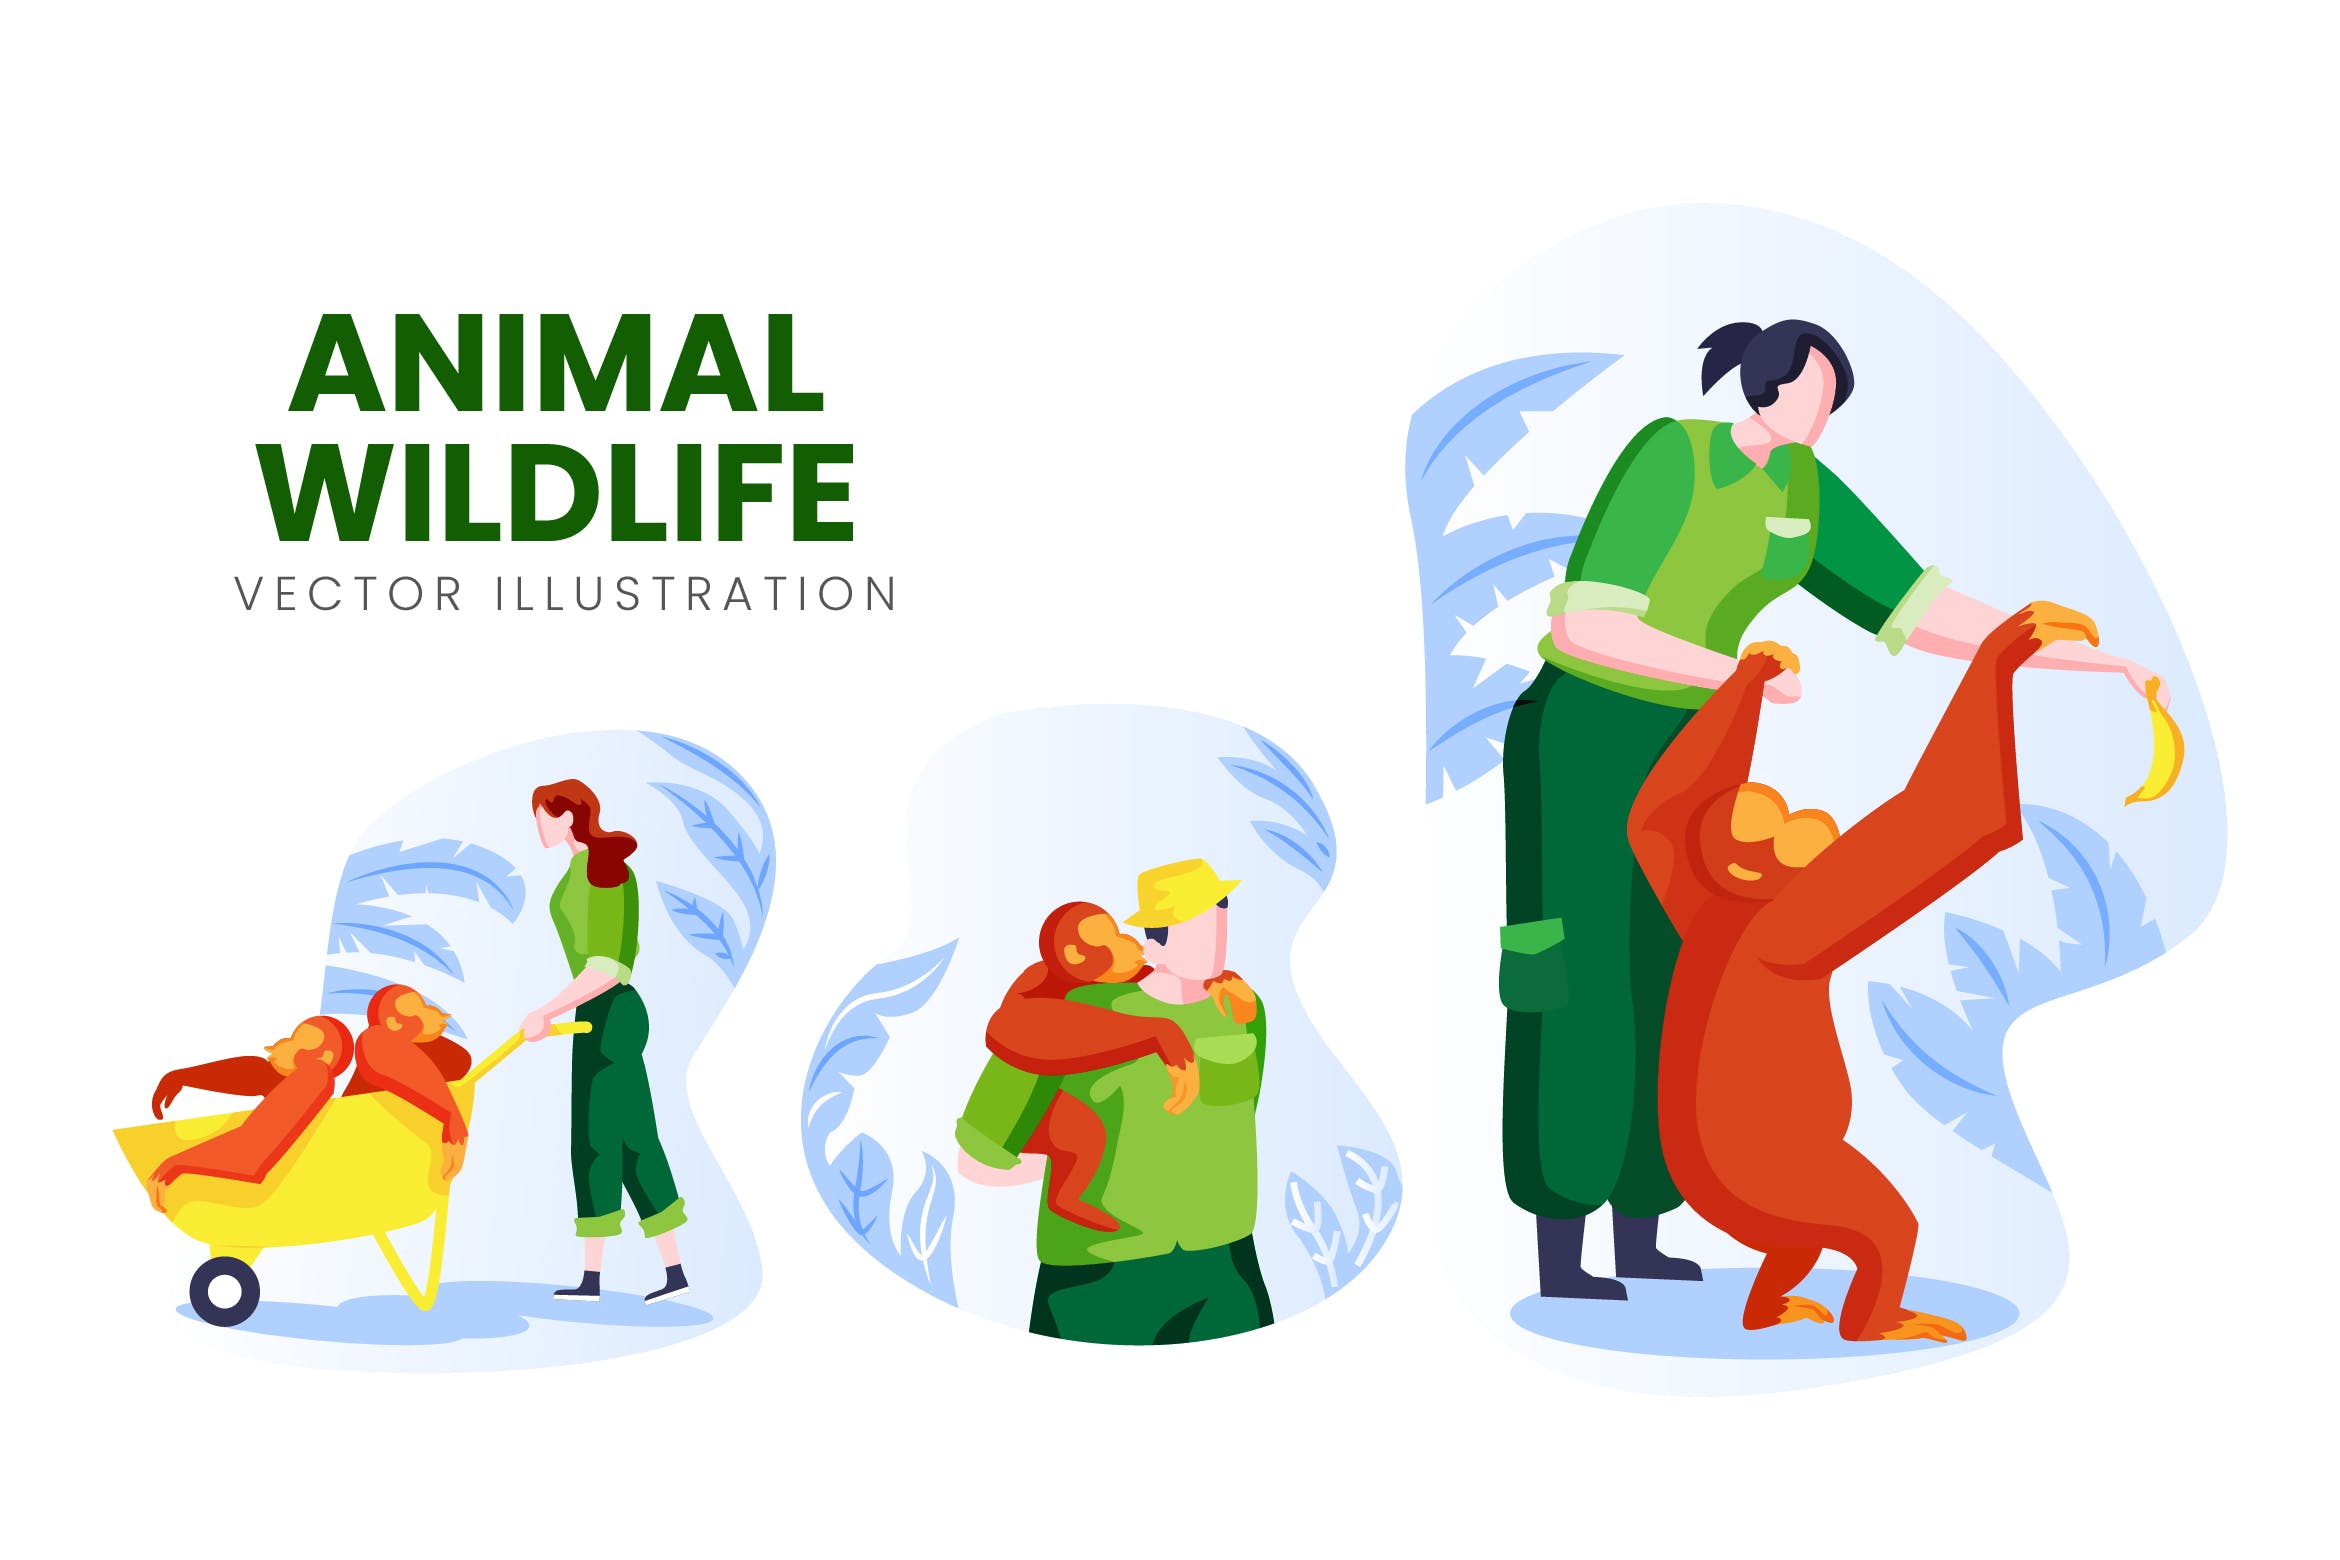 野生动物保育员人物形象素材库精选手绘插画矢量素材 Animal Wildlife Vector Character Set插图